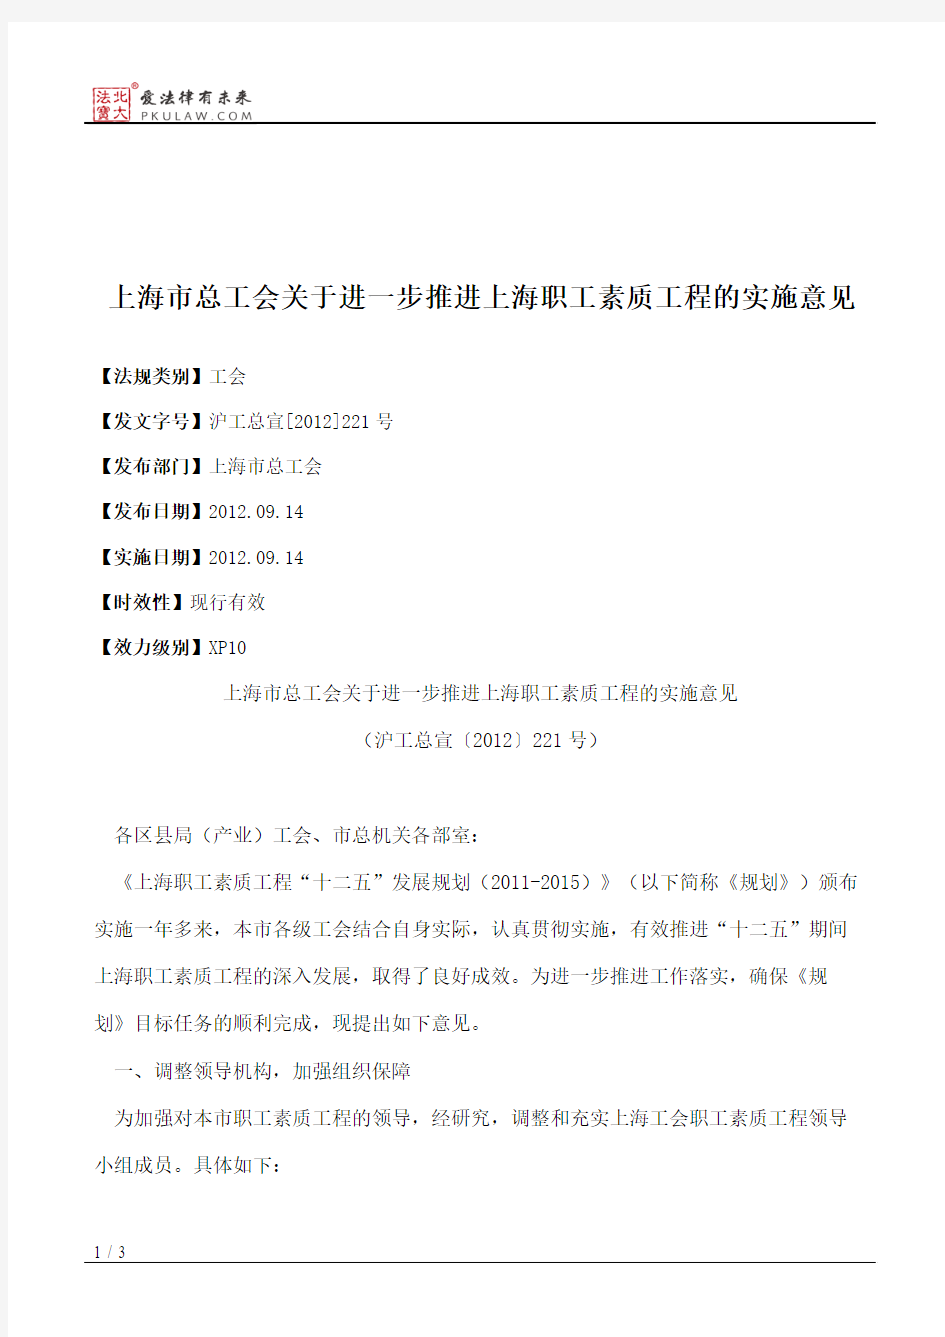 上海市总工会关于进一步推进上海职工素质工程的实施意见